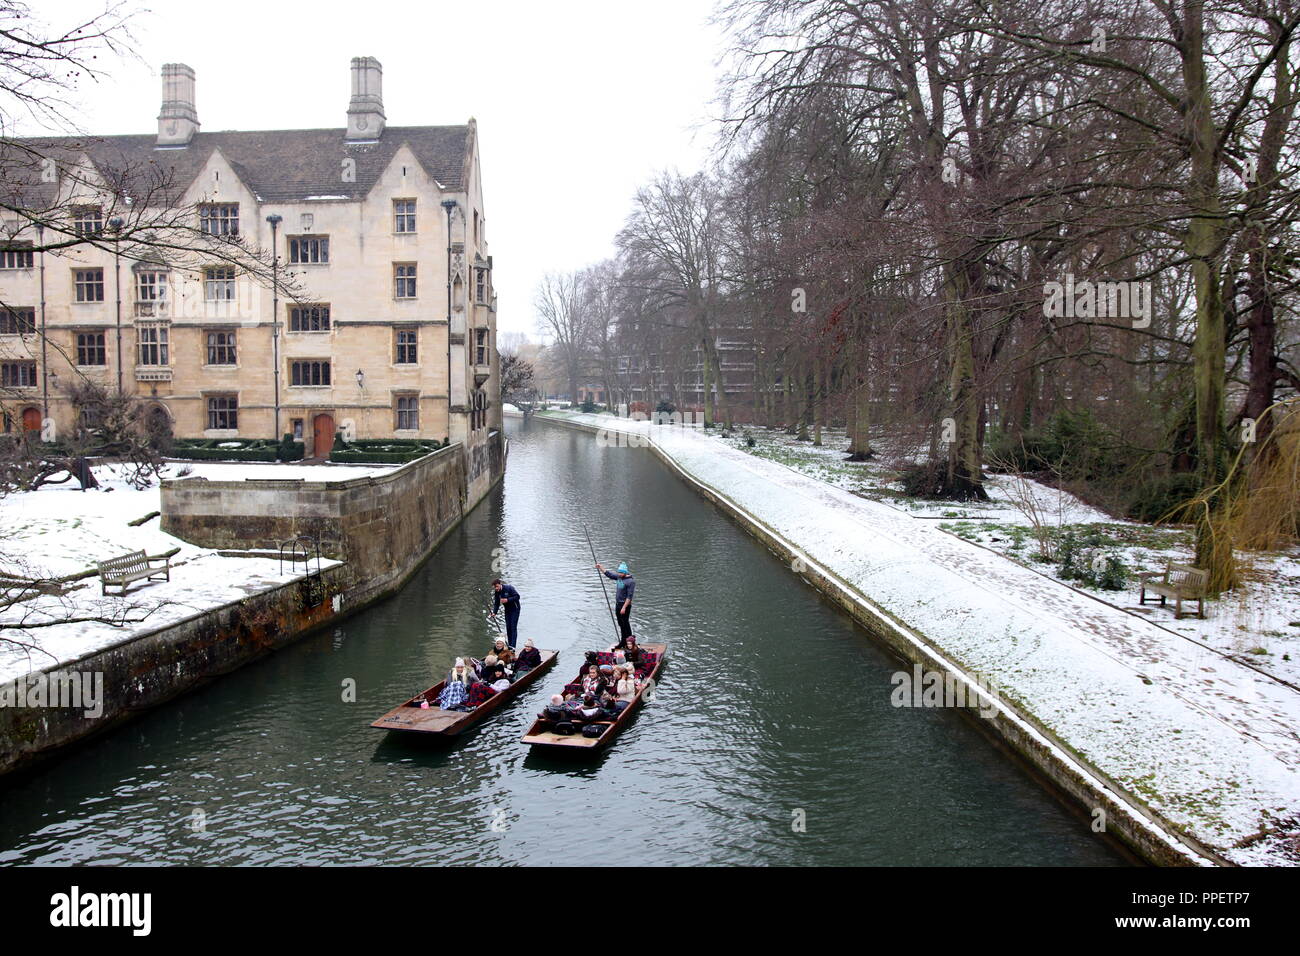 Les collèges de l'Université de Cambridge dans la neige de l'hiver Banque D'Images